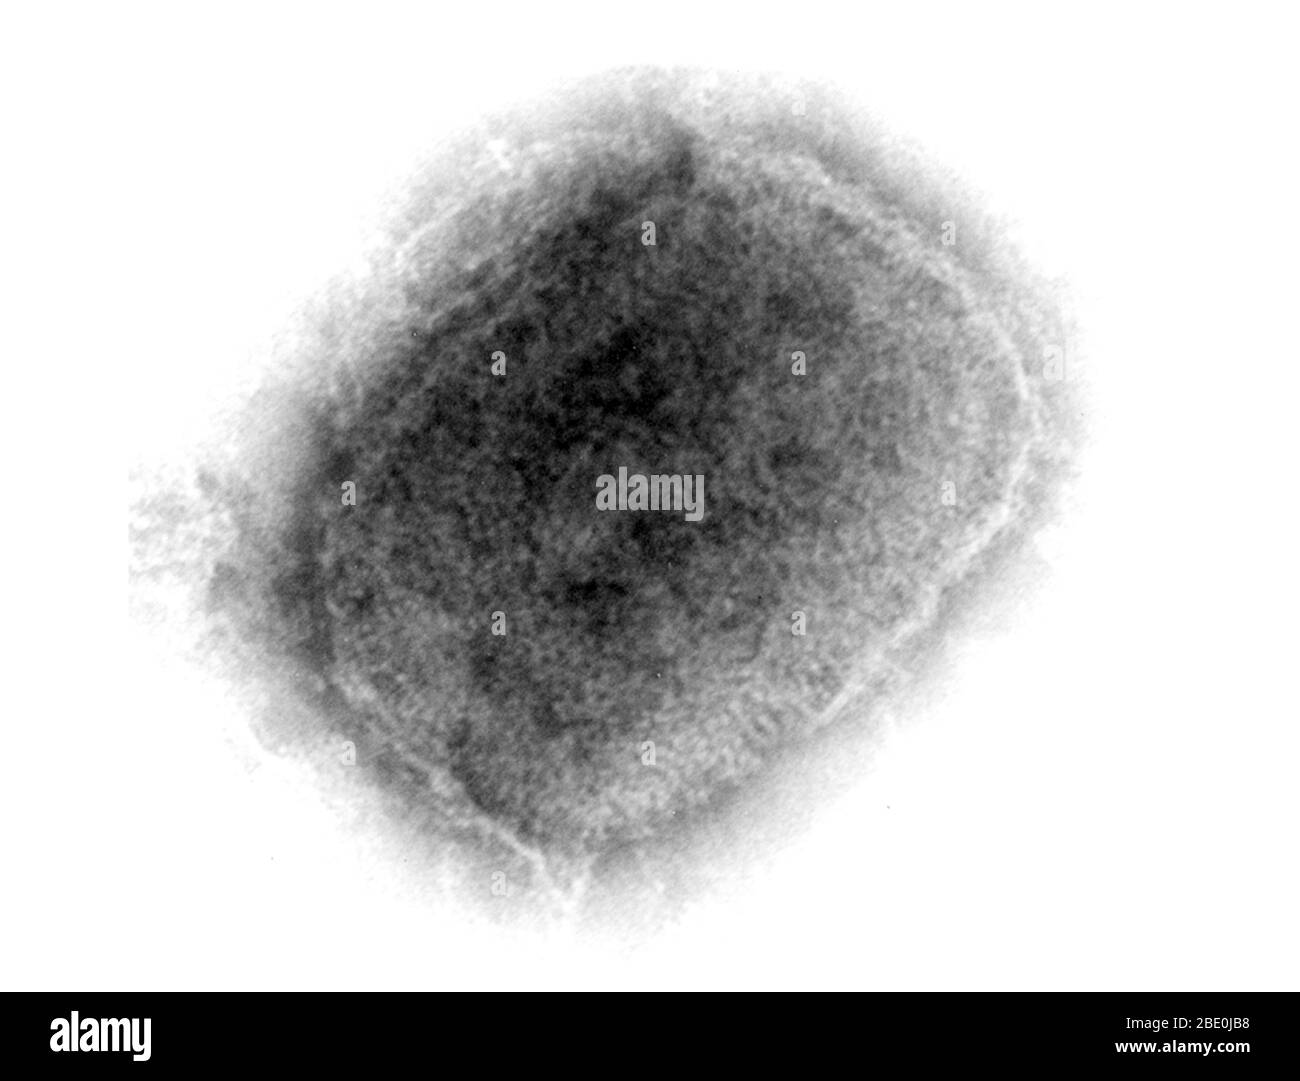 Micrografia a trasmissione a colorazione negativa (TEM) che dimostra il virus monkeypox a forma di mattone da una coltura cellulare. Il virione di gelso superficiale (destro) è coperto da filamenti corti e sviati, mentre i virioni capsulari (sinistro) penetrano dalla macchia presente come un nucleo denso e definito in modo netto circondato da diverse zone laminate di densità differenti. Il virus Monkeypox (MPV) è un DNA a doppio filamento, un virus zoonotico e una specie del genere Orthopoxvirus della famiglia Poxviridae. È uno degli ortopossvirus umani che include virus di variola (VARV), cowpox (CPX) e vaiolo vaccino (VACV). BU Foto Stock